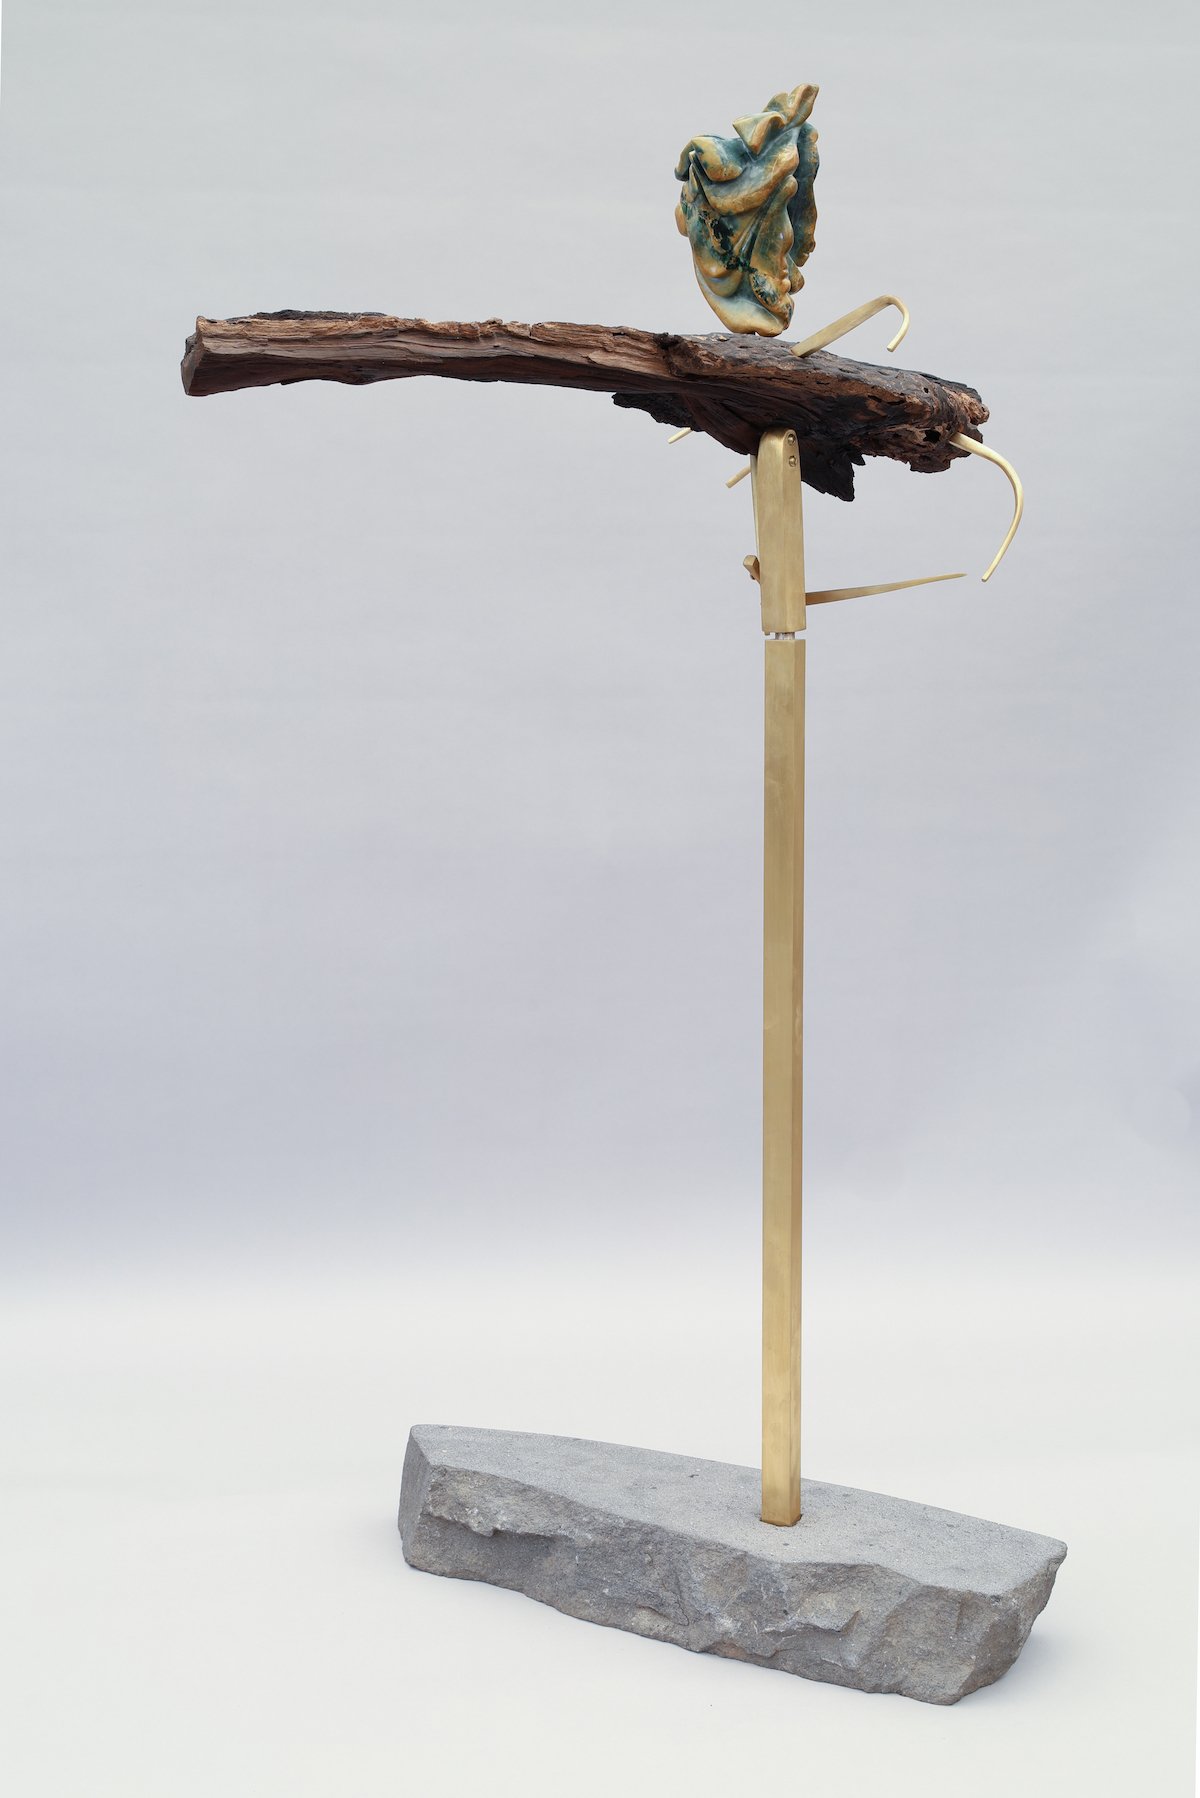 Zigarra-sculpture-julio-martinez-barnetche-marion-friedmann-gallery-high-res0G9A0247.jpg